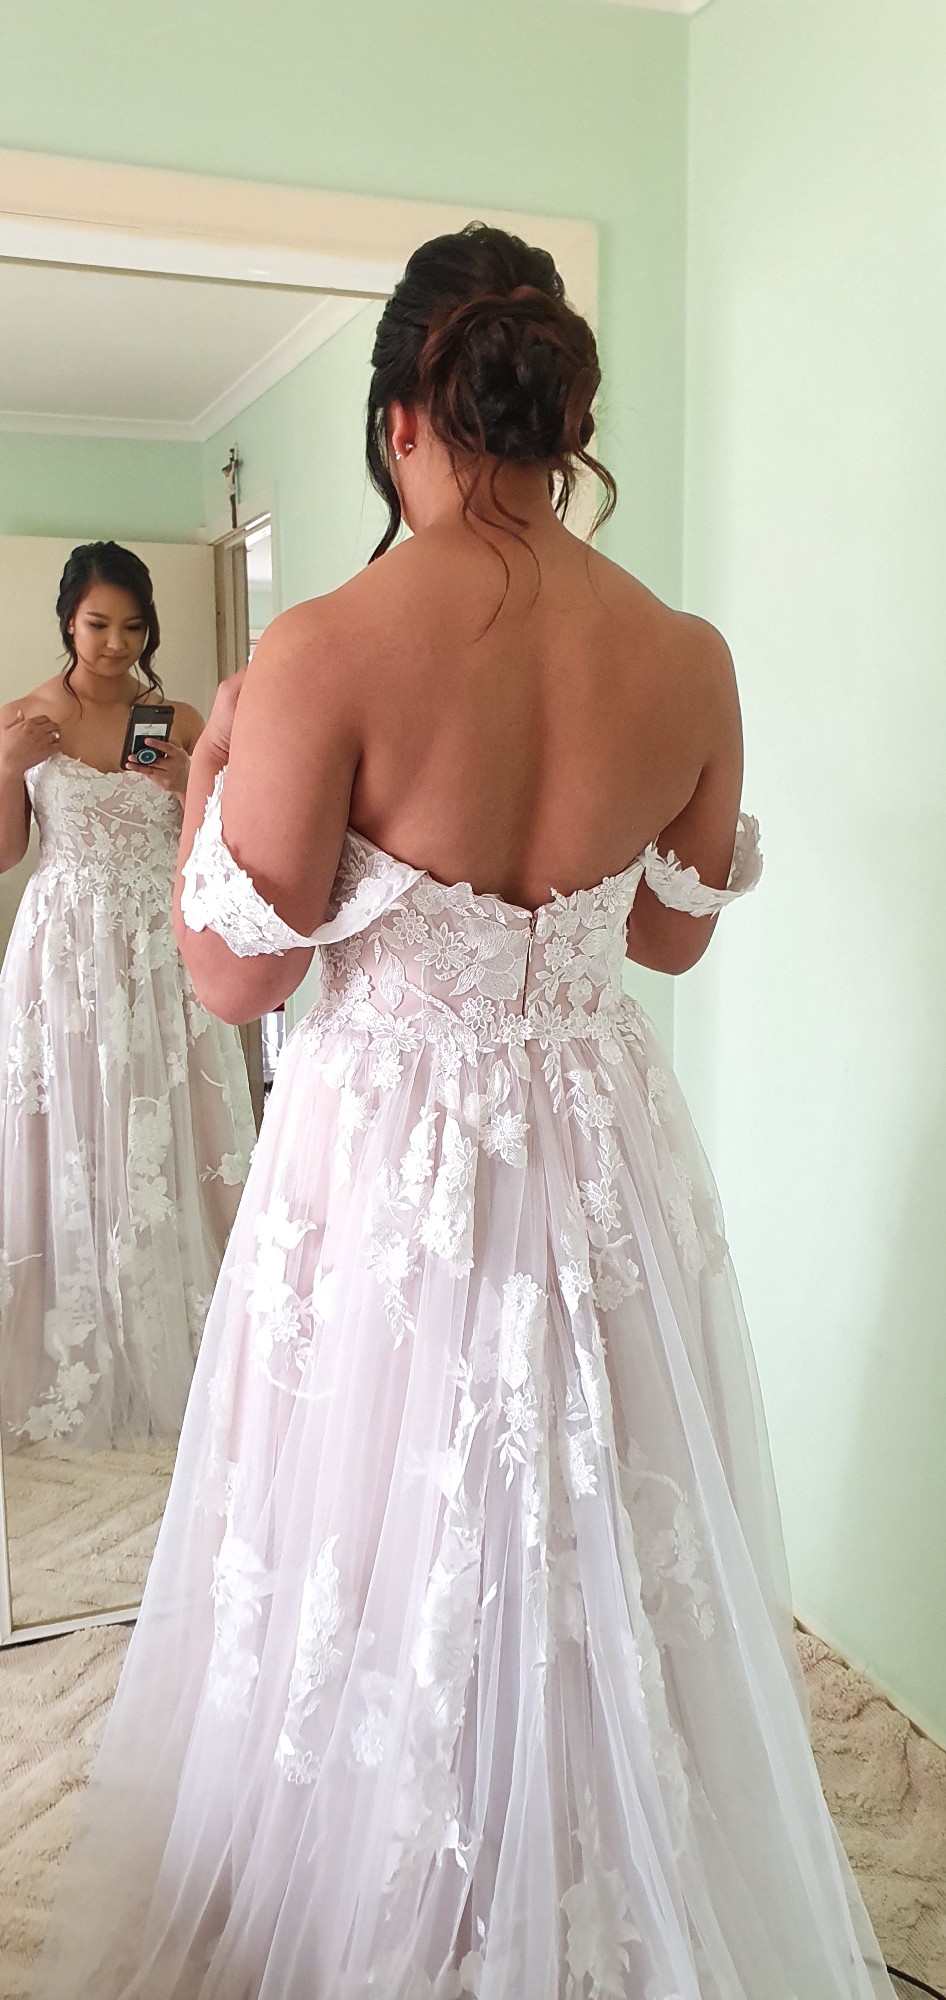 Madi Lane Elora New Wedding Dress Save 38% - Stillwhite